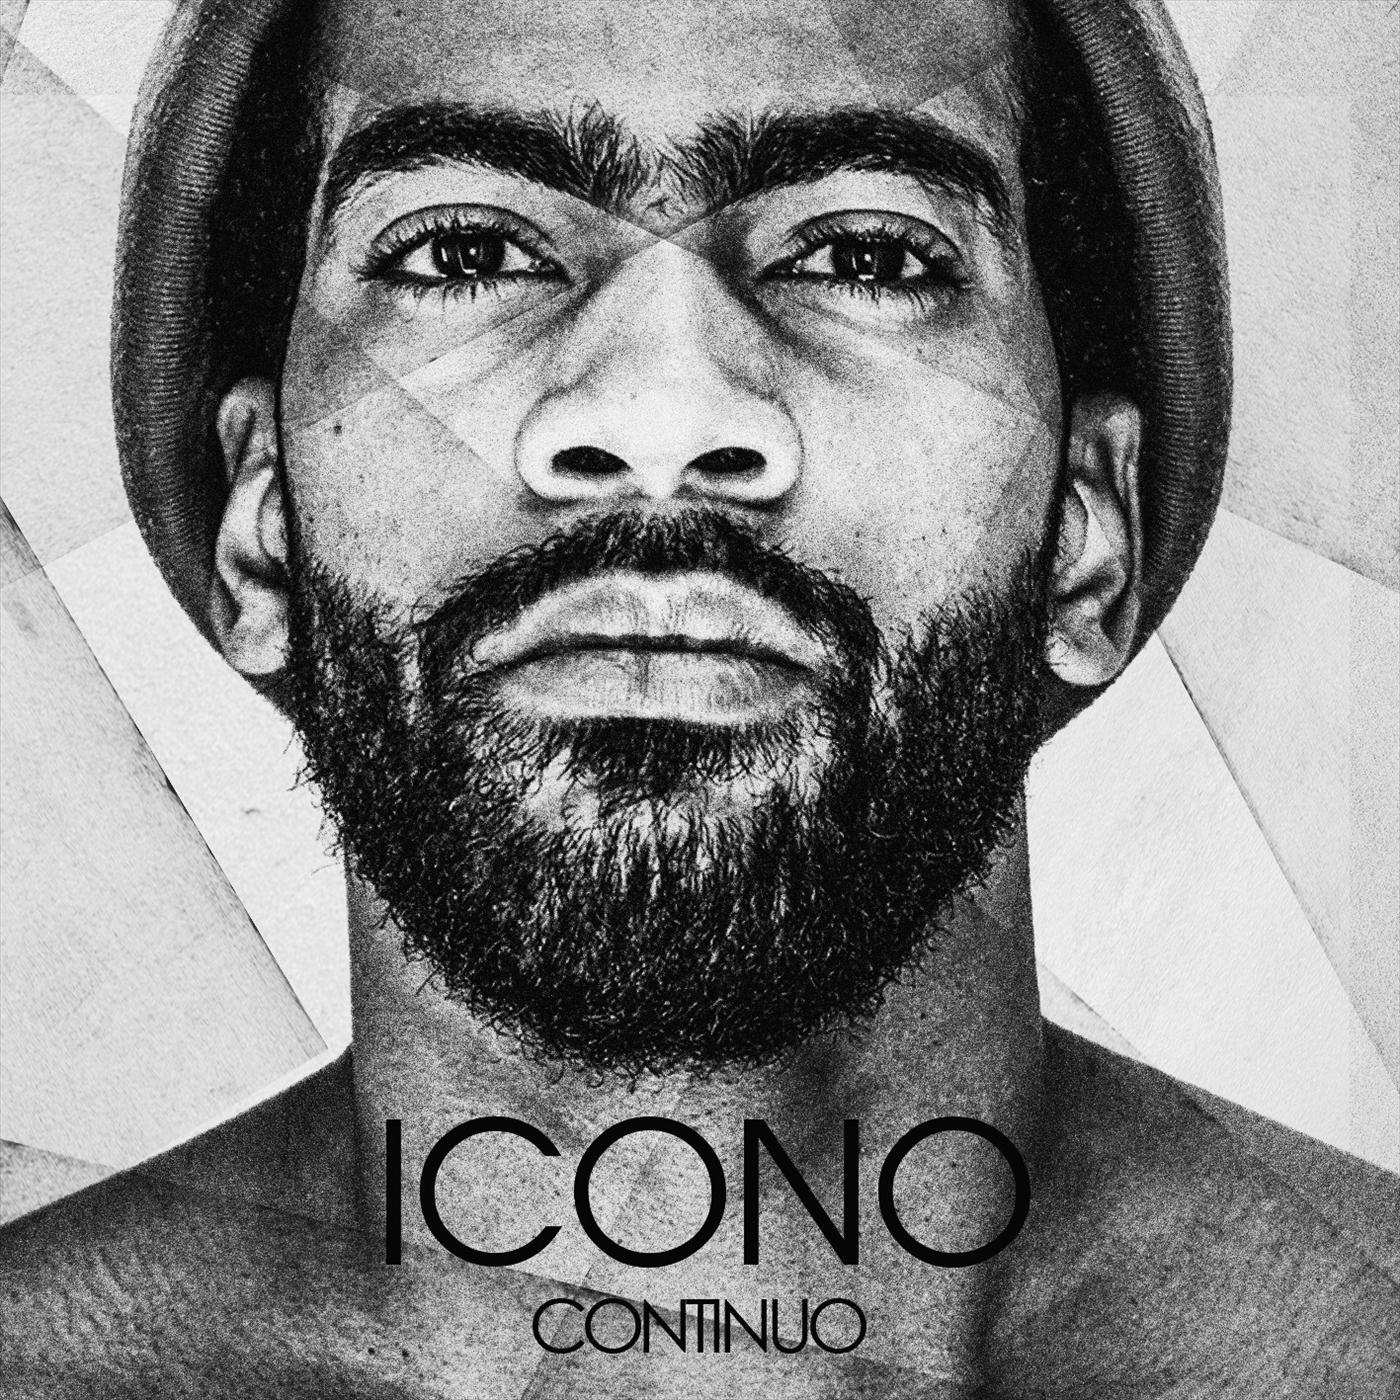 Continuo - Icono (feat. Black Soul & DJ Lápiz)